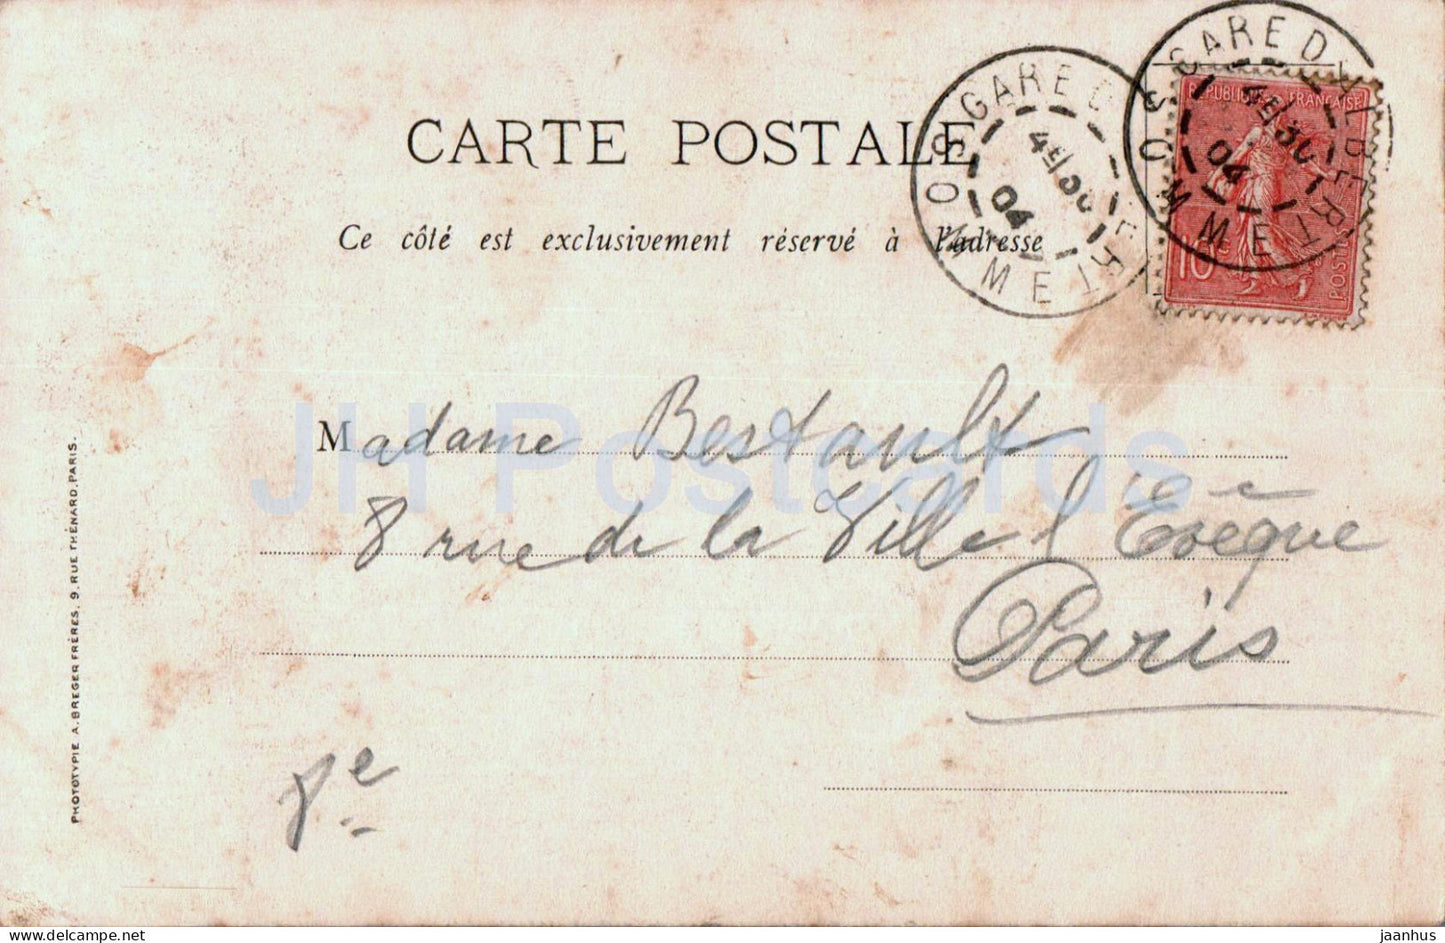 Notre Dame de Brebieres - Albert - Somme - Le Maitre Autel - Kathedrale - alte Postkarte - 1904 - Frankreich - gebraucht 